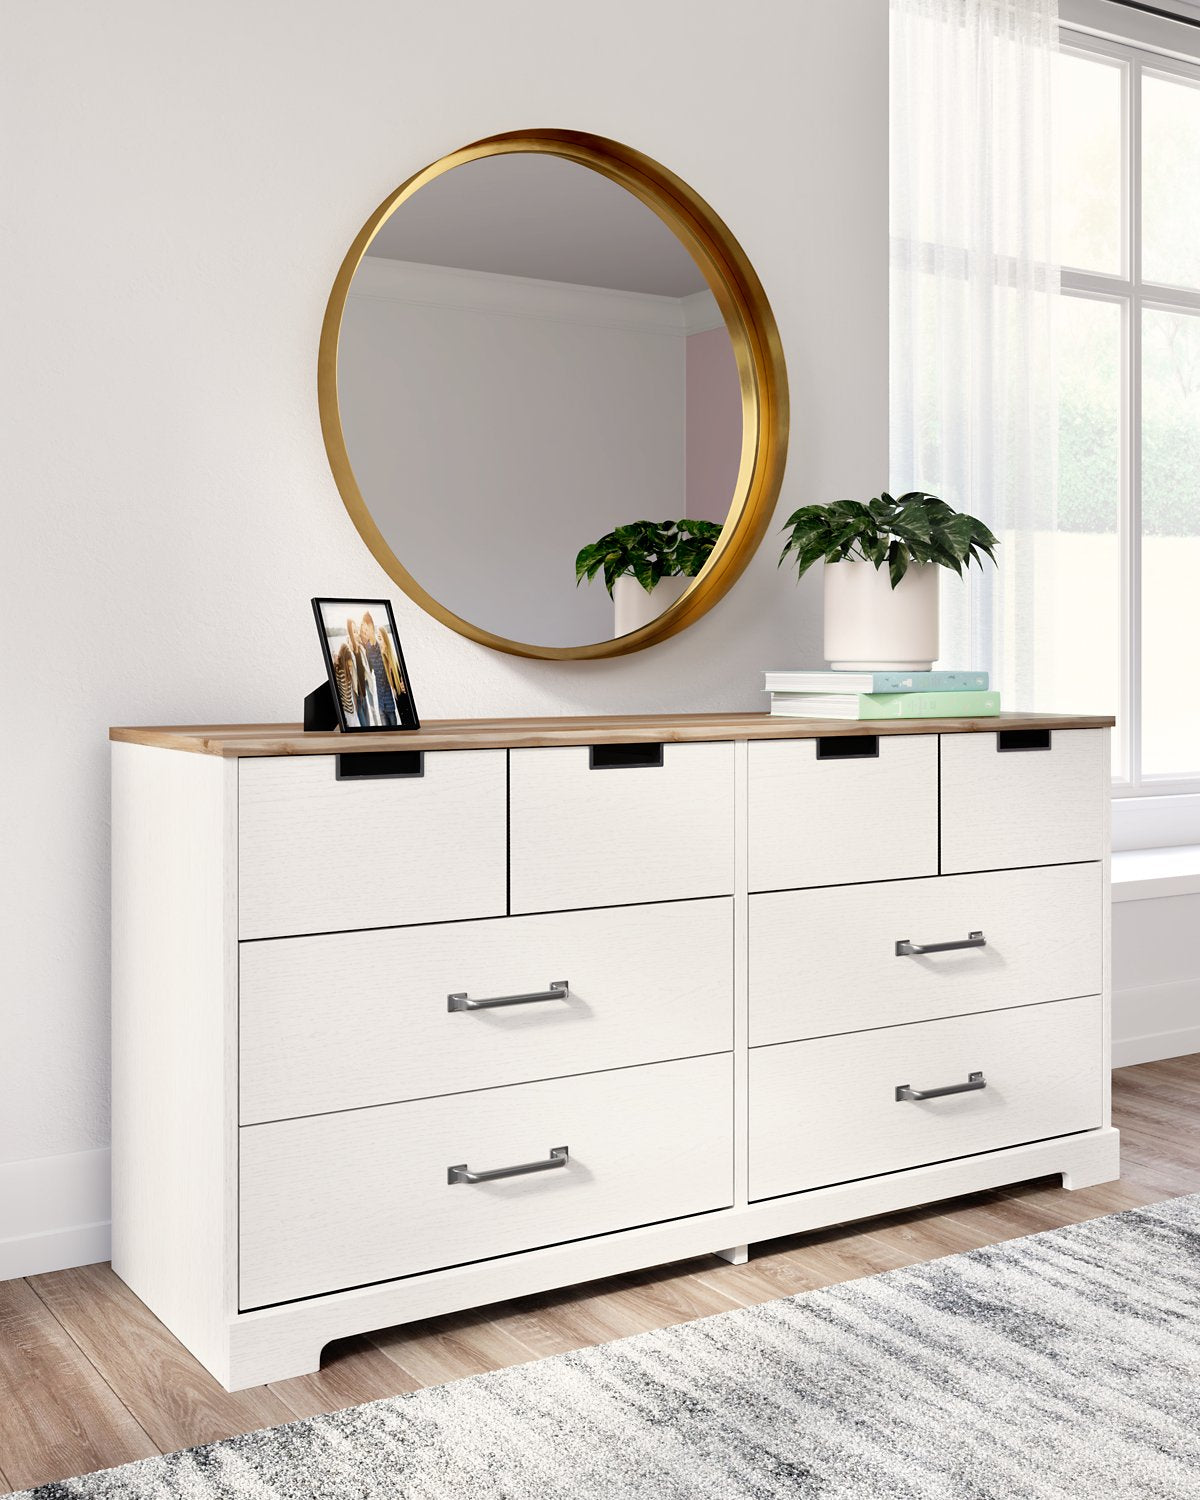 Vaibryn Dresser - Half Price Furniture